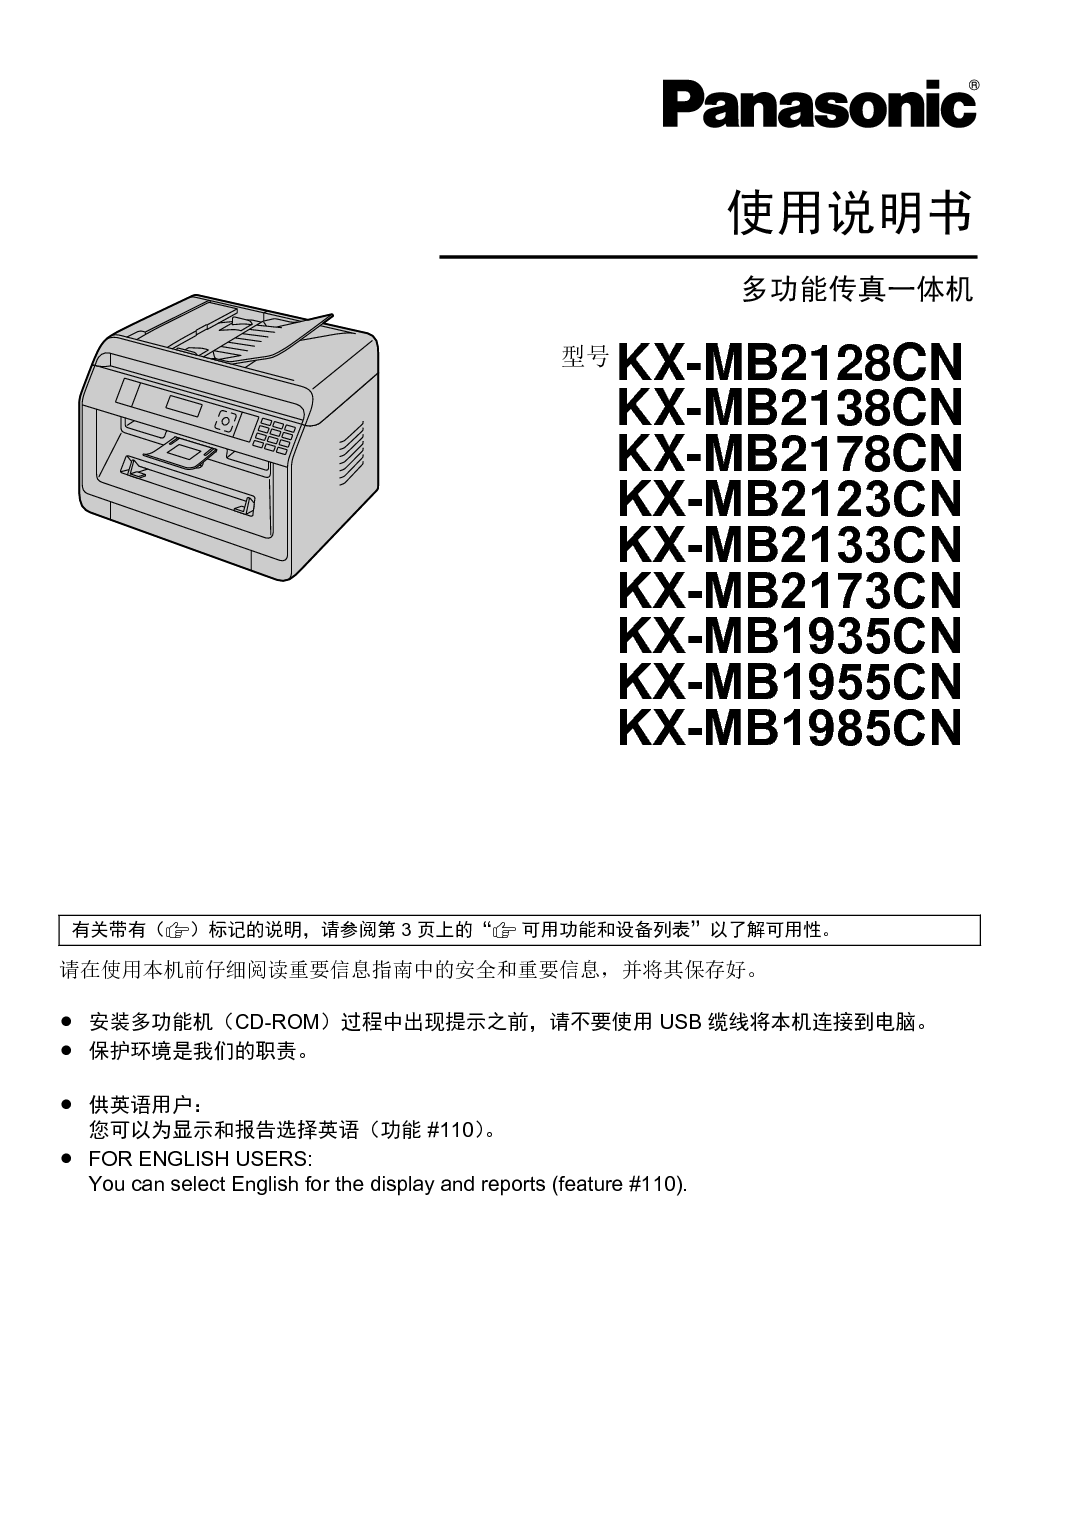 松下 Panasonic KX-MB1935CN 使用说明书 封面